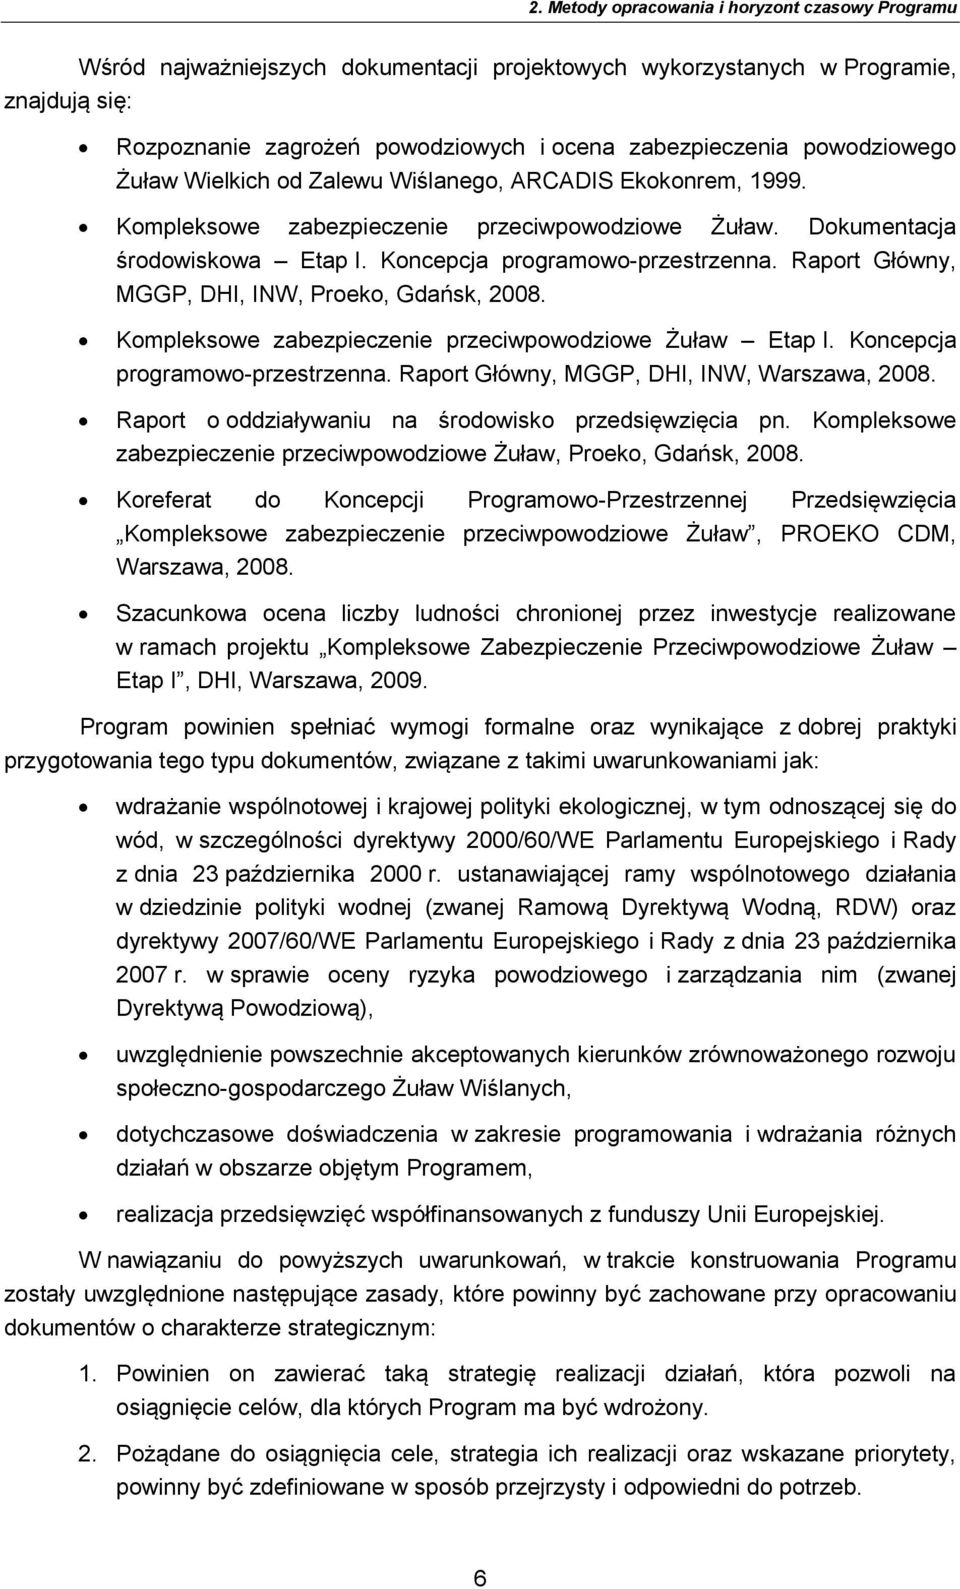 Raport Główny, MGGP, DHI, INW, Proeko, Gdańsk, 2008. Kompleksowe zabezpieczenie przeciwpowodziowe Żuław Etap I. Koncepcja programowo-przestrzenna. Raport Główny, MGGP, DHI, INW, Warszawa, 2008.